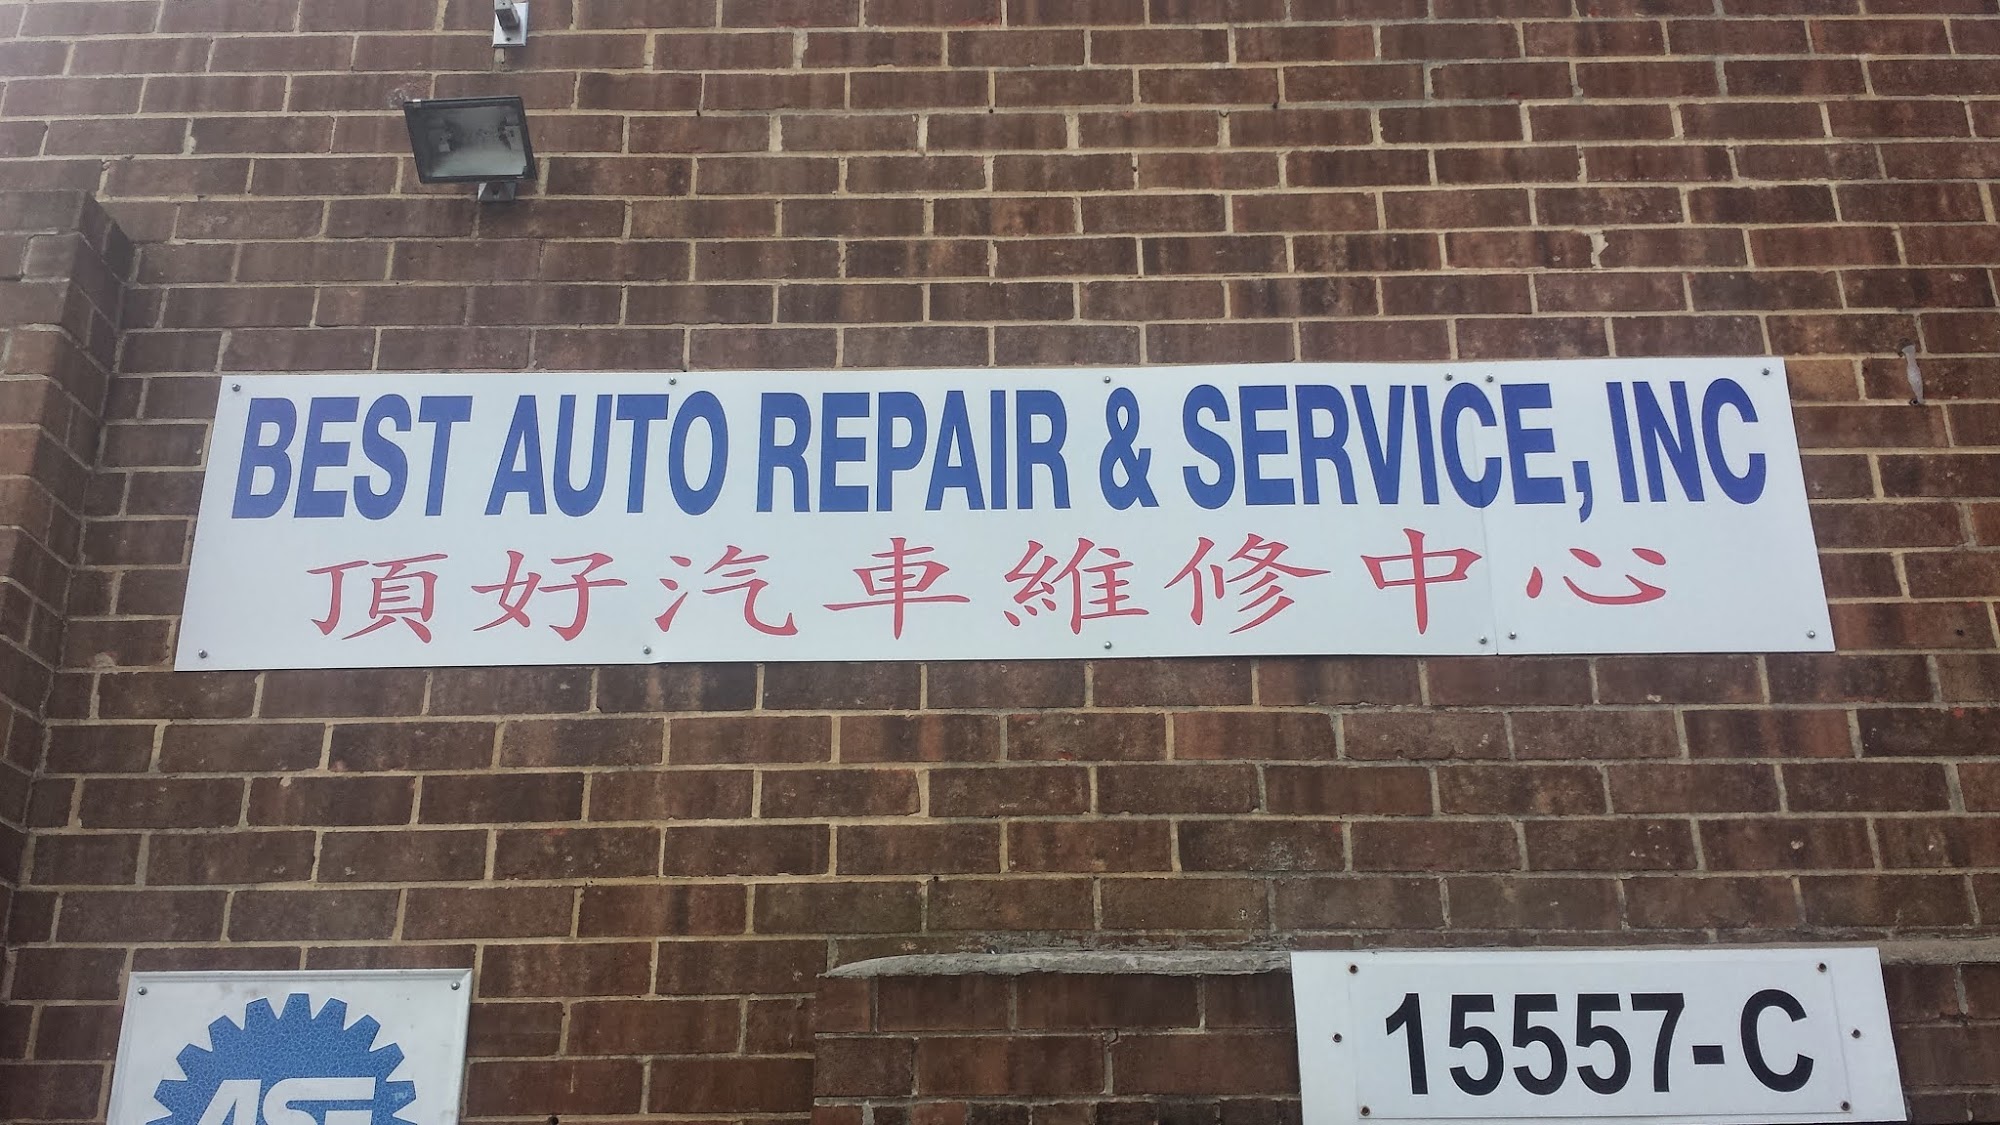 Best Auto Repair & Service, Inc